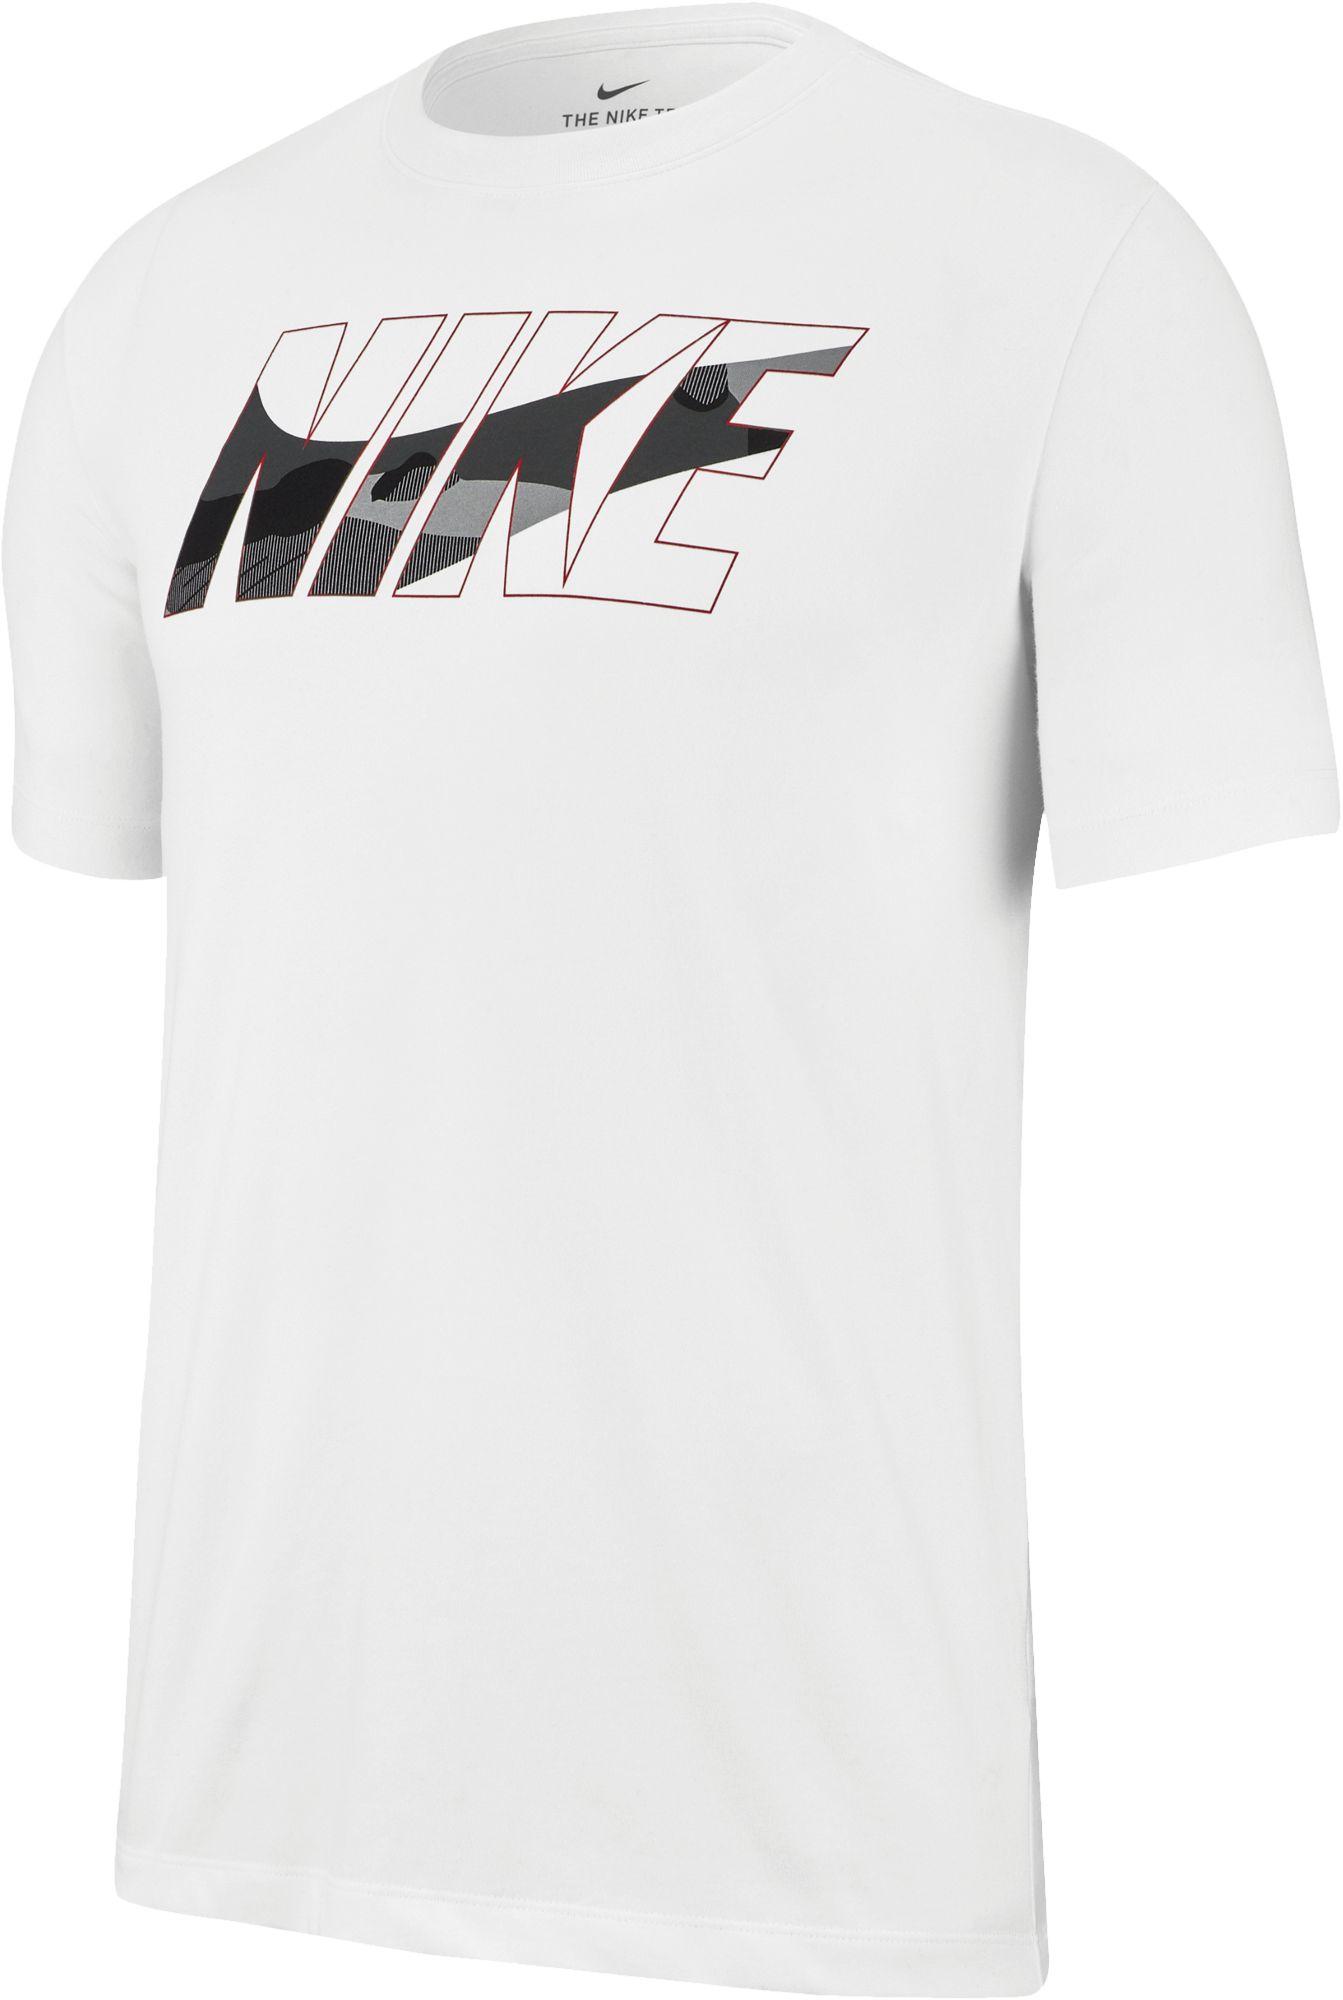 Nike Dri Fit White T Shirt T-shirt Nike Dri-fit White | Venzero